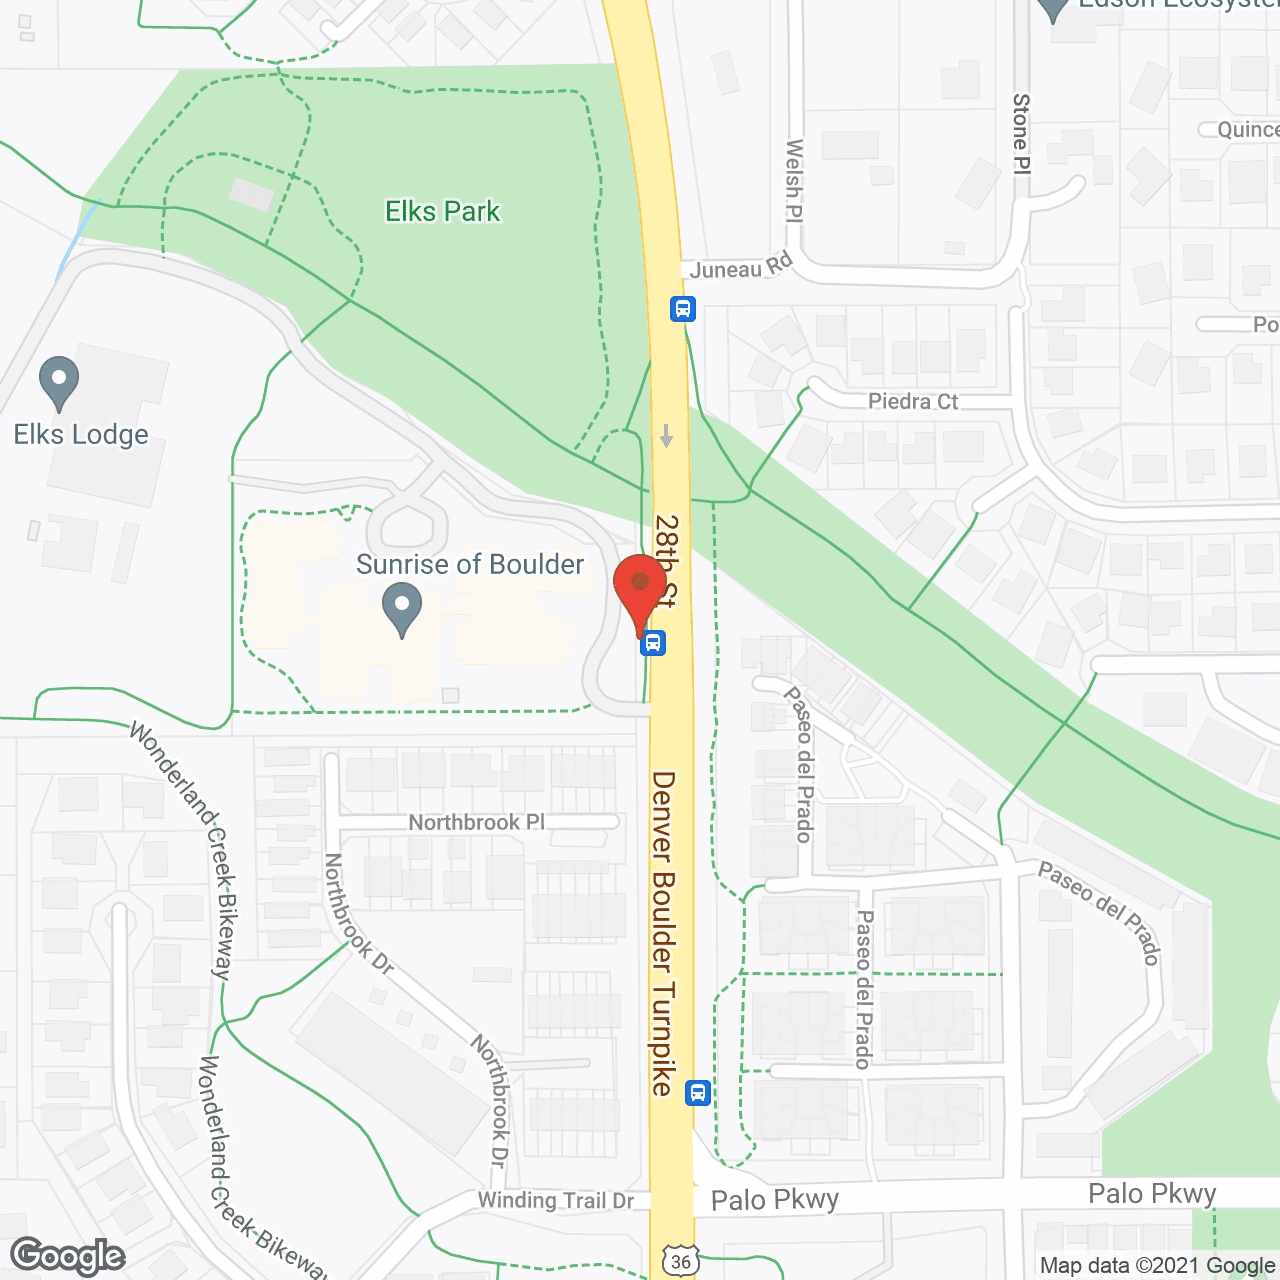 Sunrise of Boulder in google map